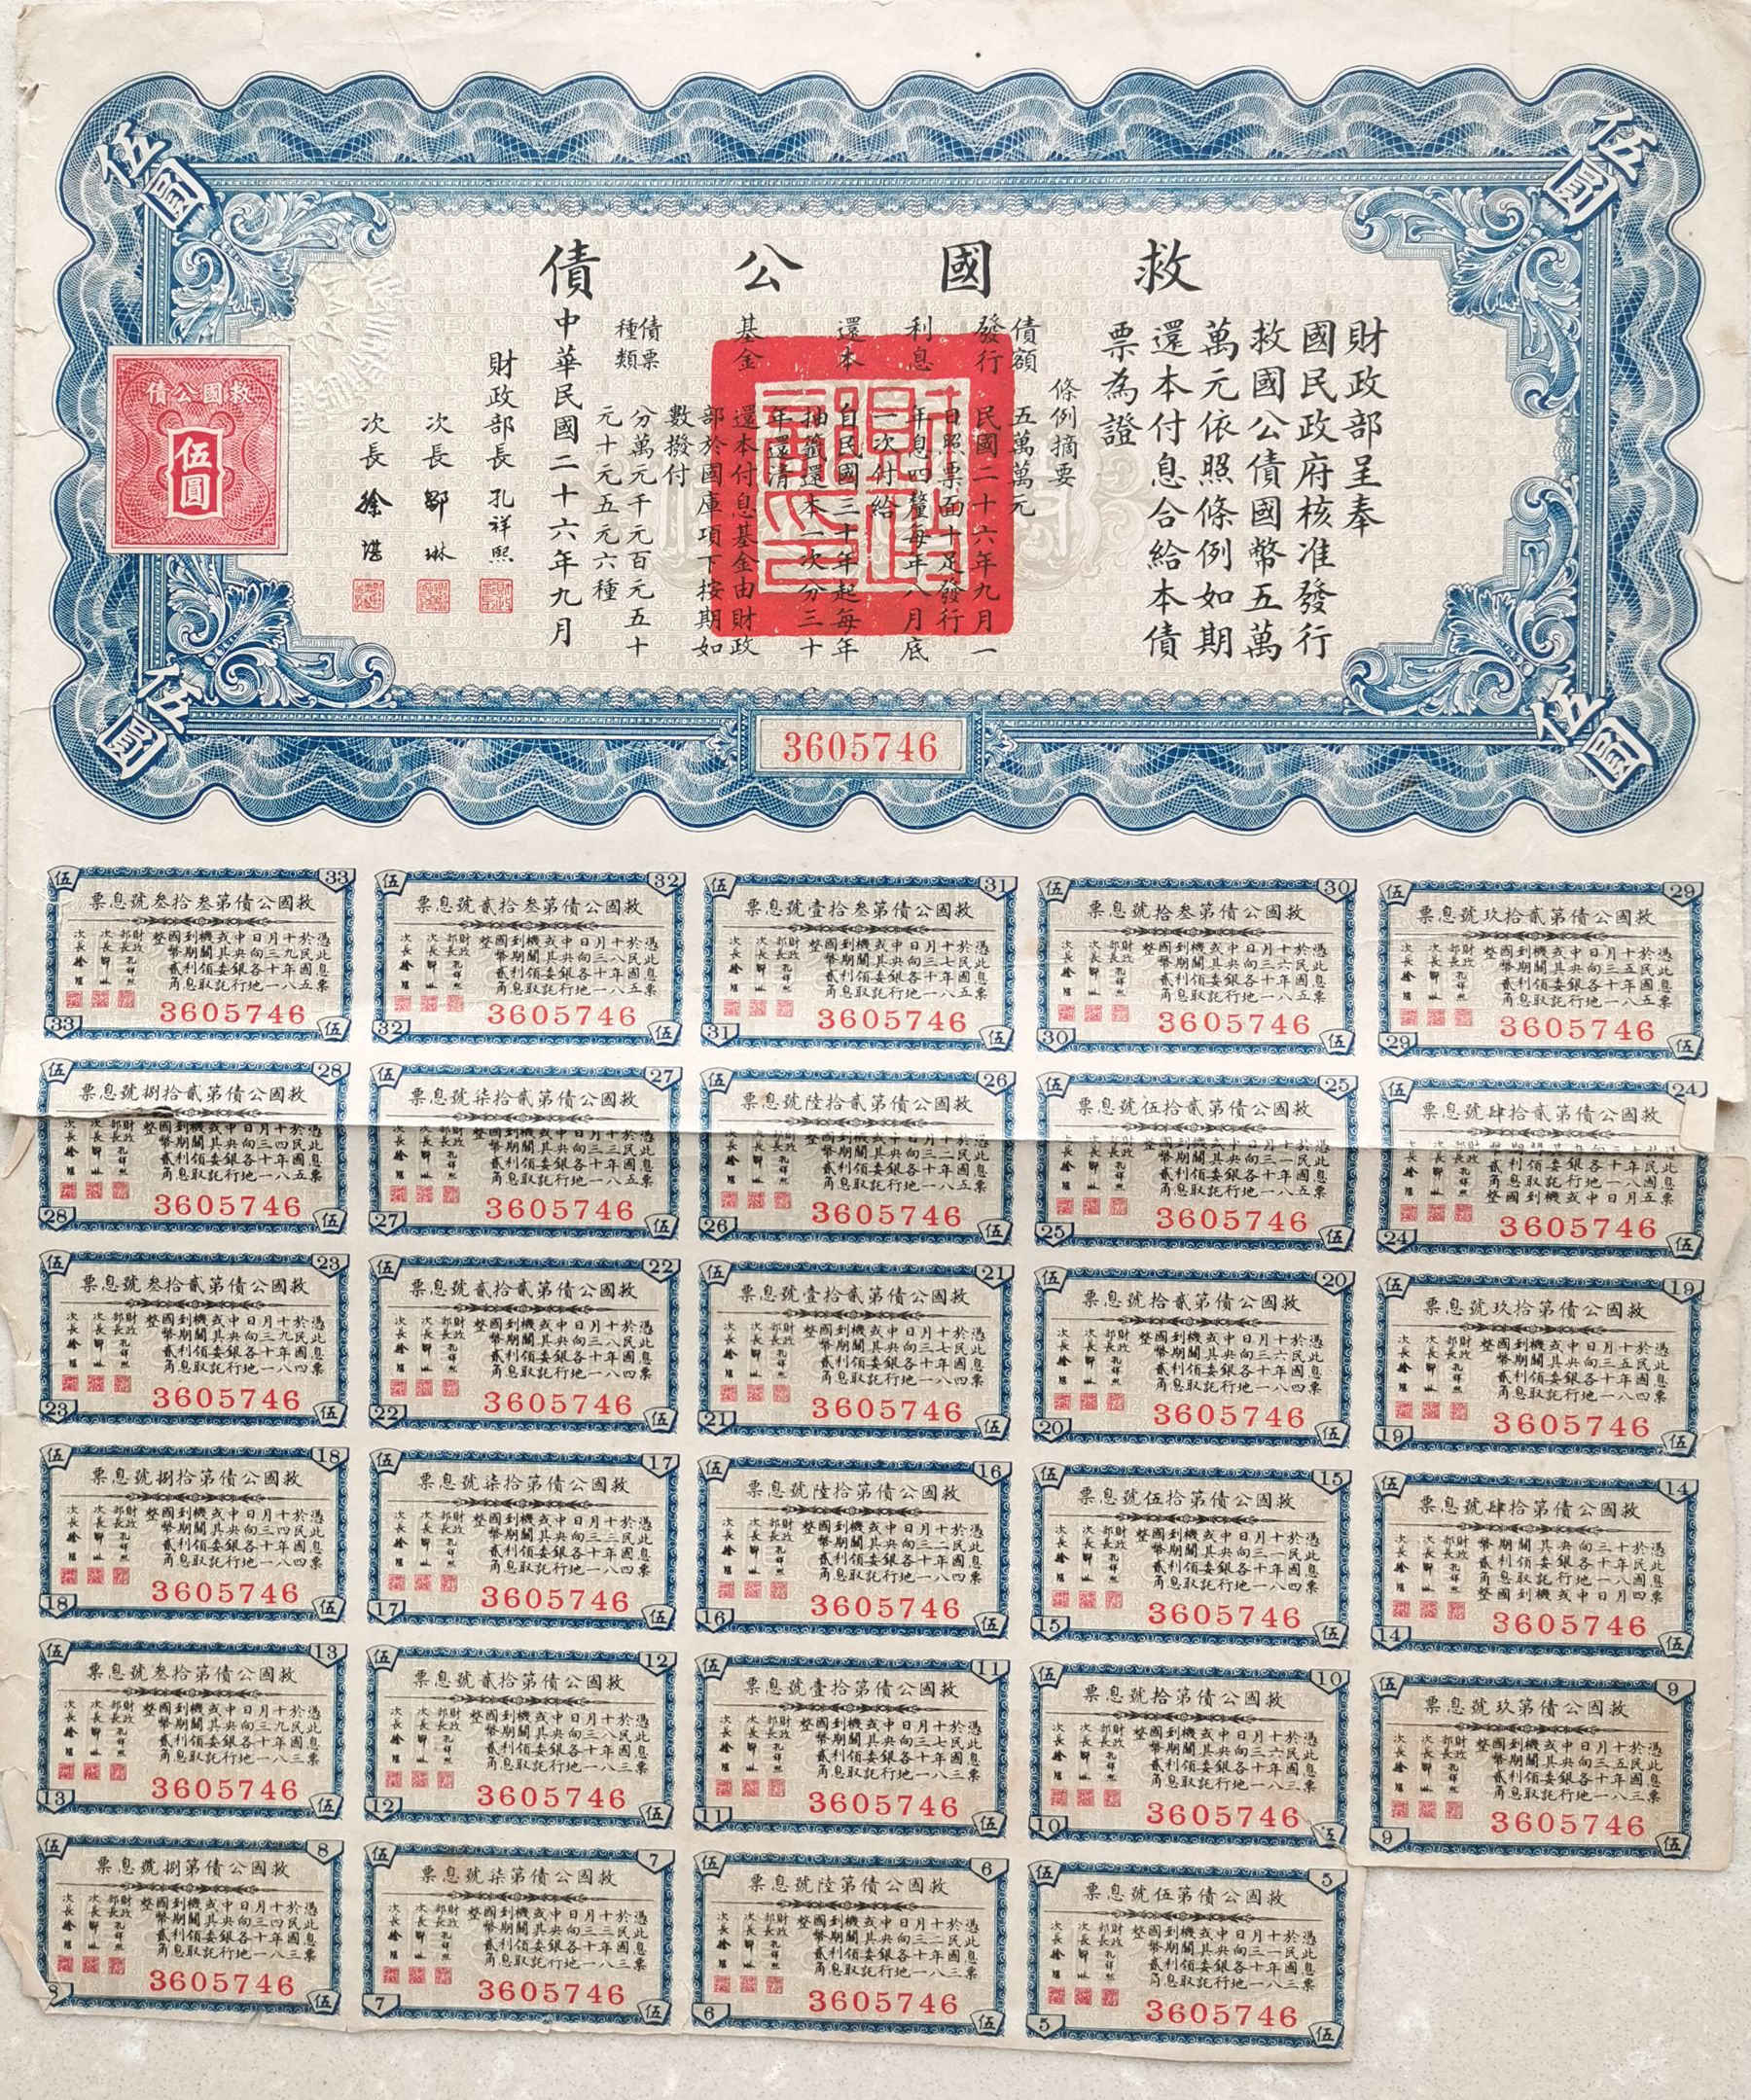 B2010, Liberty Bond of China, 5 Dollars 1937, Fine